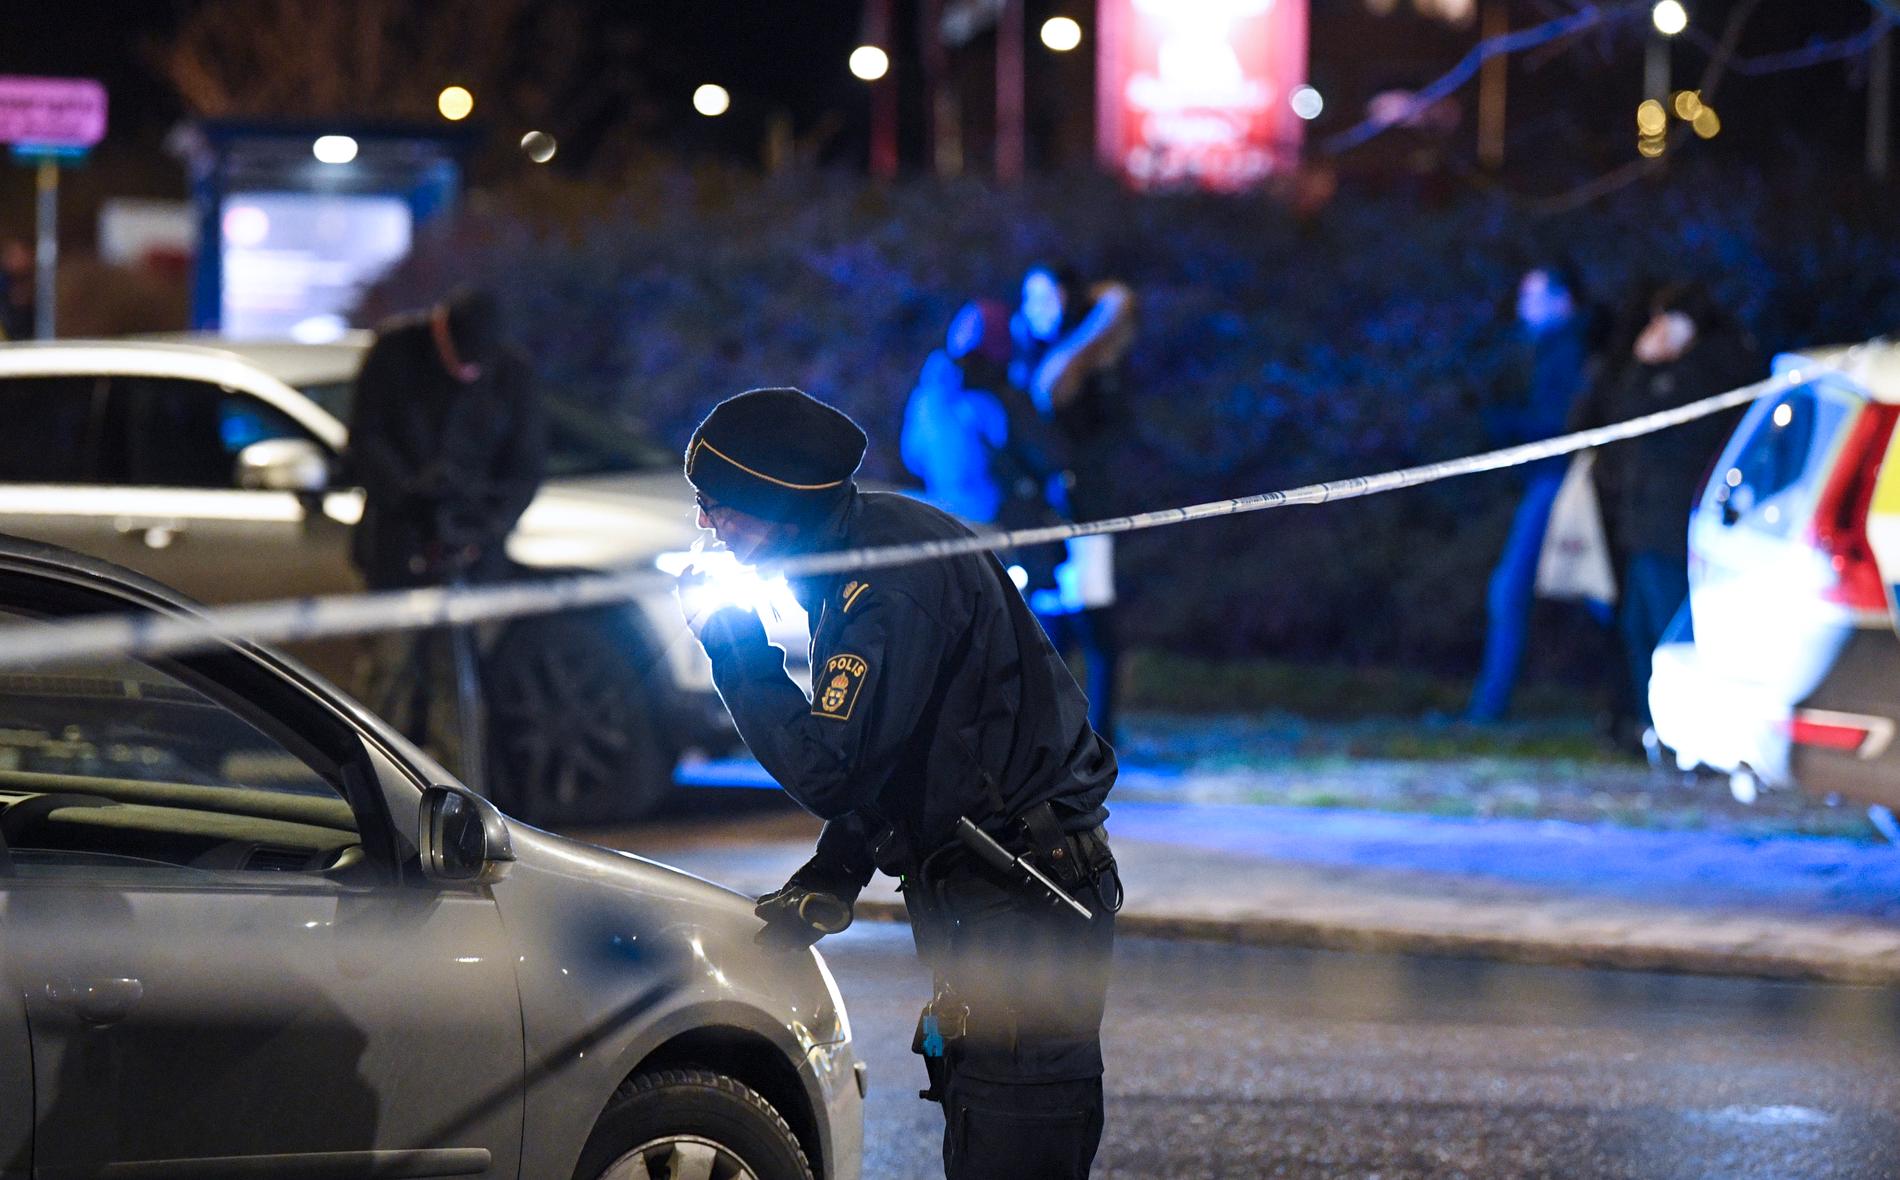 Polis och avspärrningar efter att en 25-årig man skjutits till döds på Professorsgatan i området Hermodsdal i Malmö på måndagskvällen.